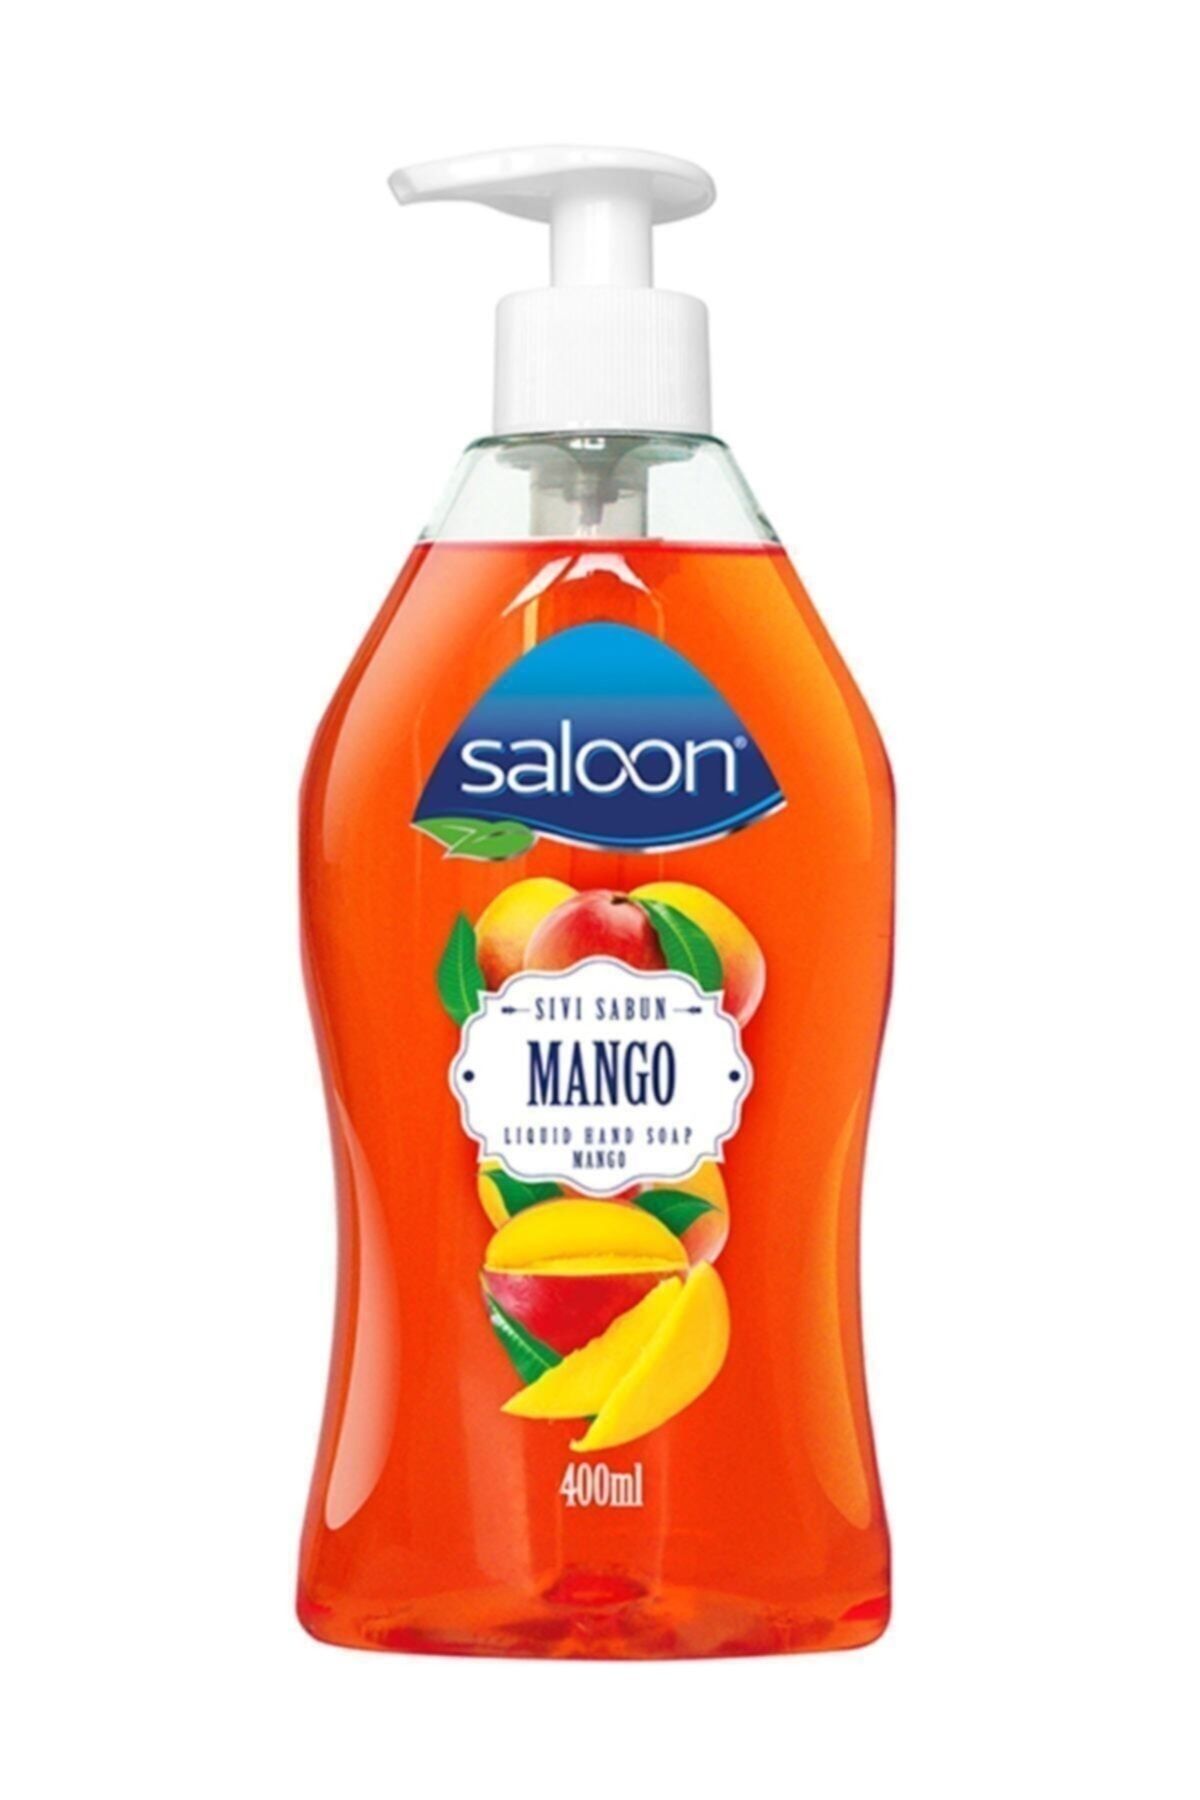 Мыло салон купить. Мыло жидкое Saloon манго дозатор 400мл. Мыло жидкое "манго" 400 мл Saloon. Saloon жидкое мыло 400мл "гранат" *12. Жидкое мыло Saloon "манго" 400мл Турция / Saloon sivi Sabun Mango 400 ml.